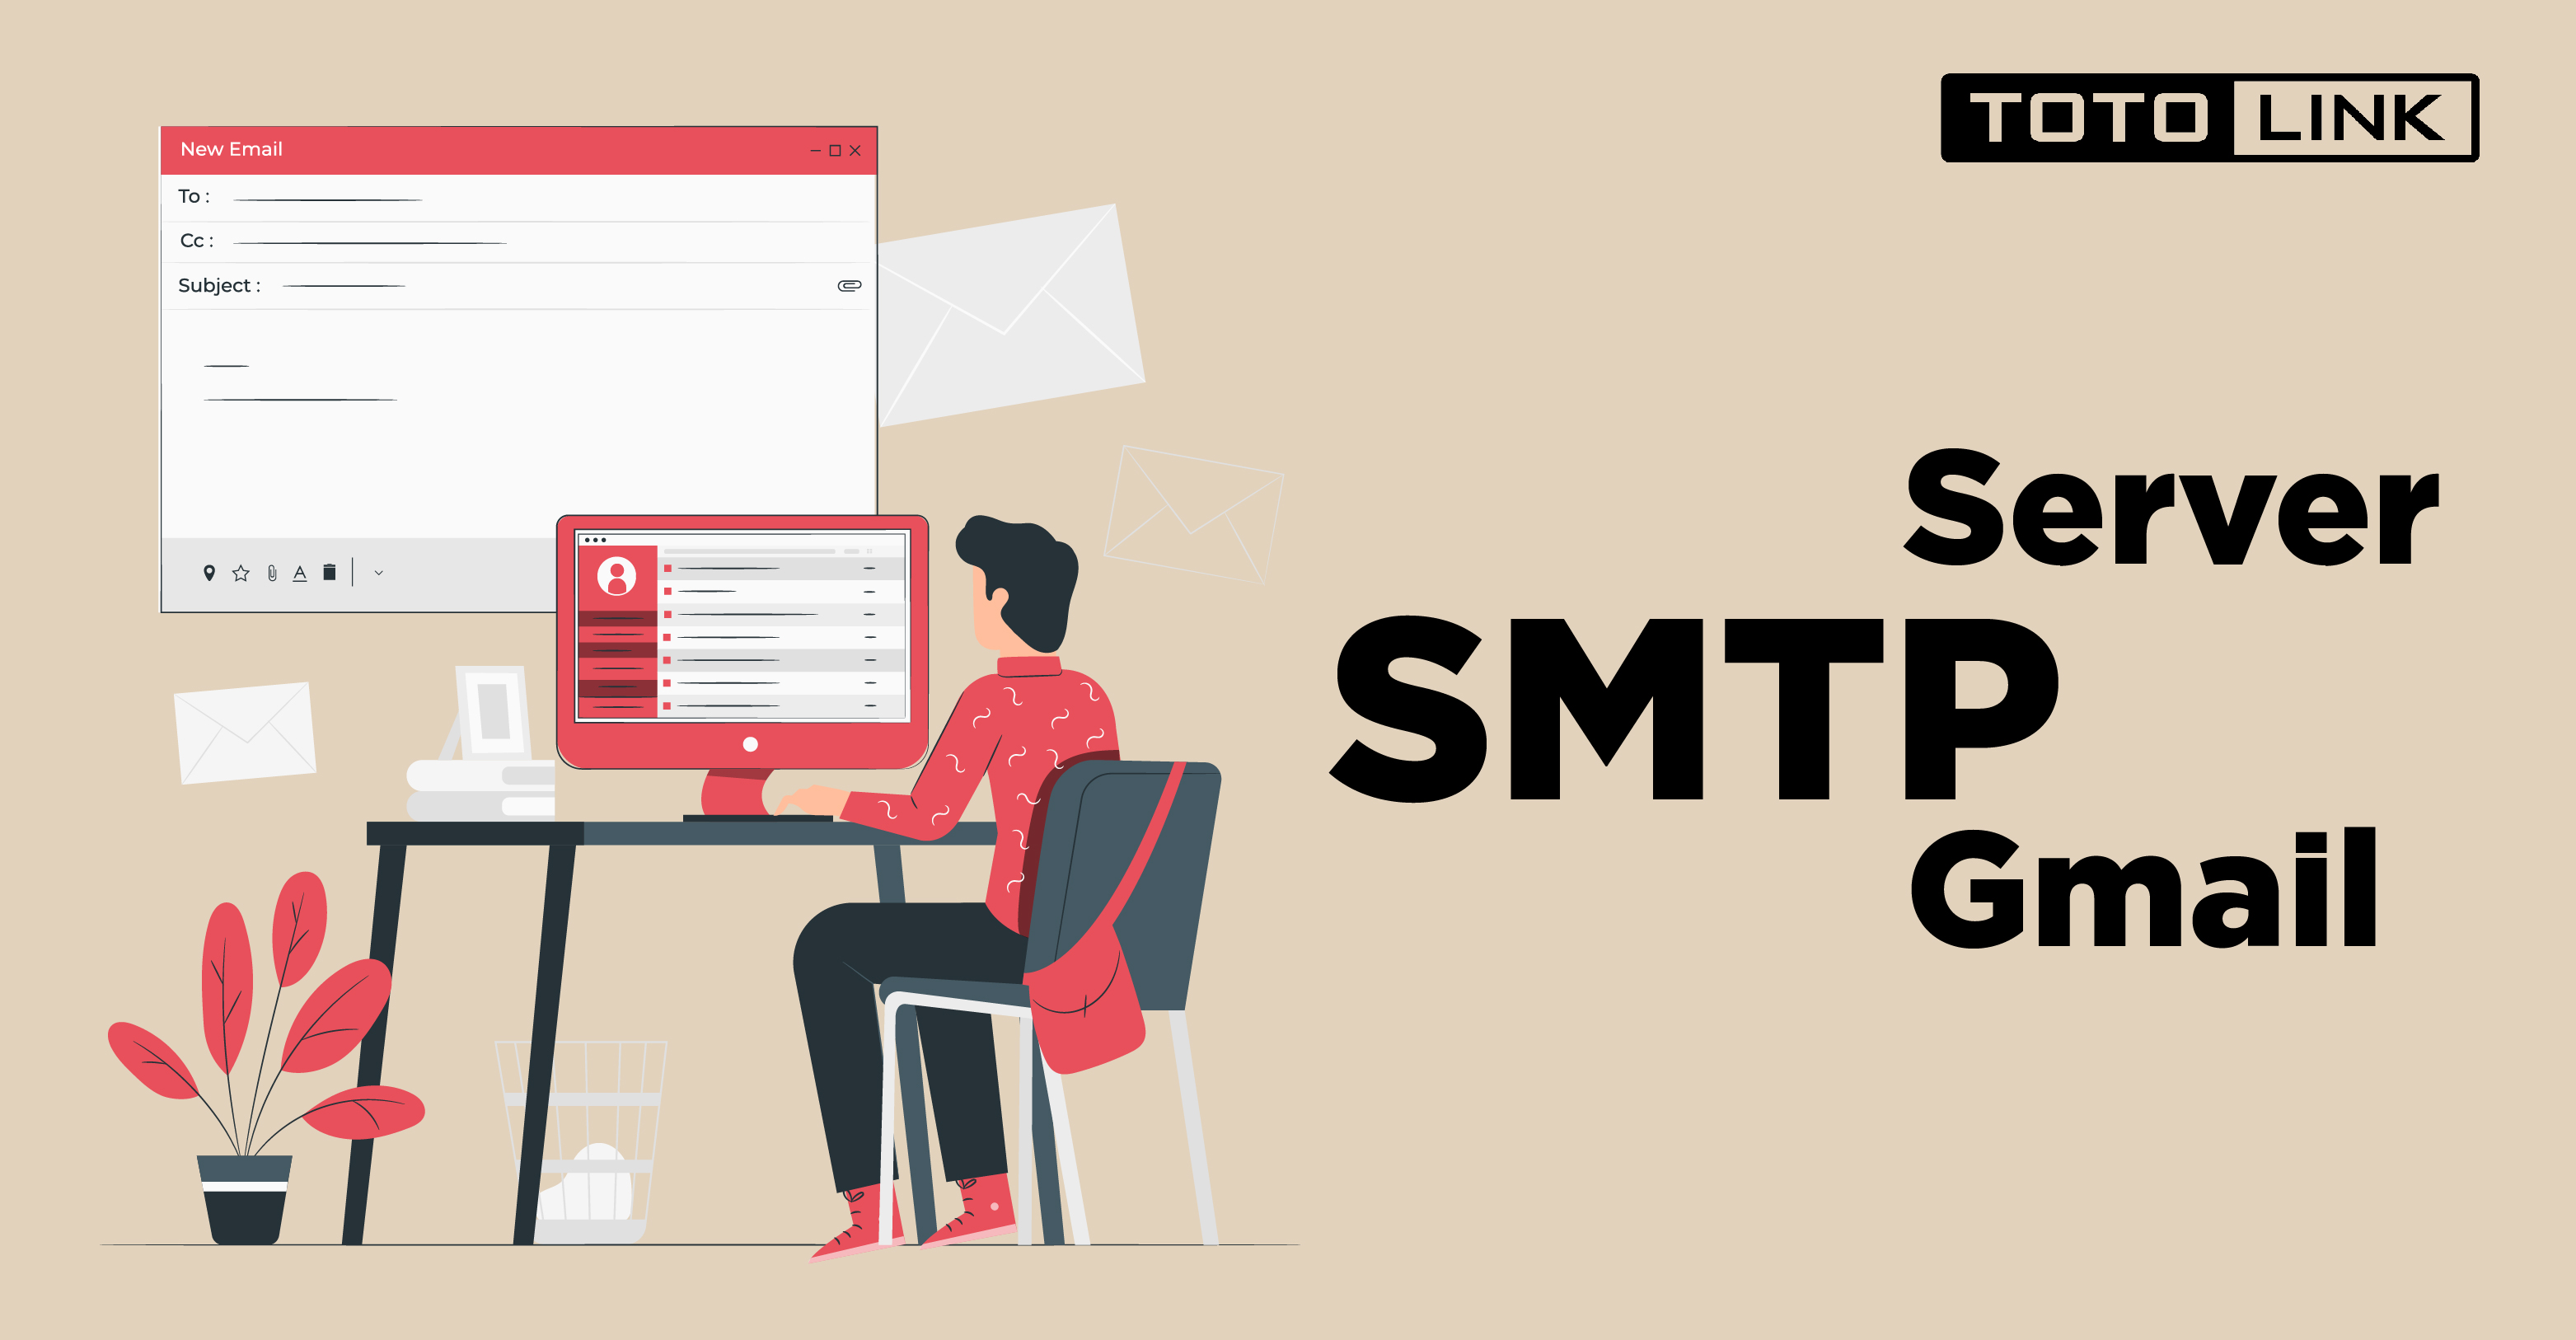 SMTP là gì? Tổng hợp các thông tin cần biết về SMTP Gmail